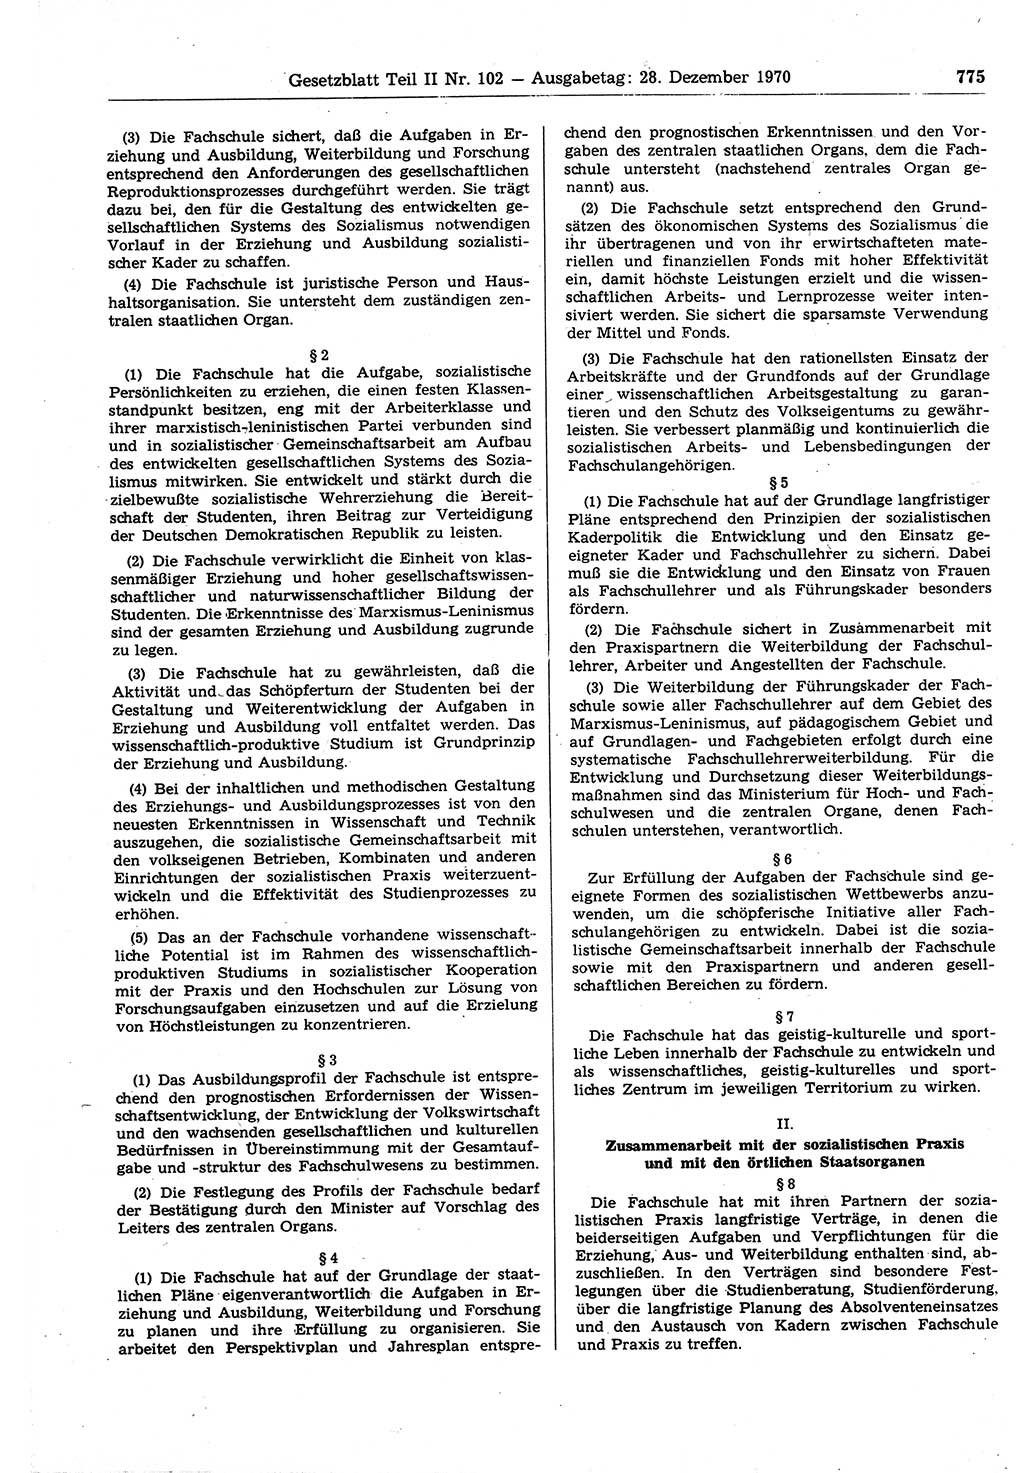 Gesetzblatt (GBl.) der Deutschen Demokratischen Republik (DDR) Teil ⅠⅠ 1970, Seite 775 (GBl. DDR ⅠⅠ 1970, S. 775)